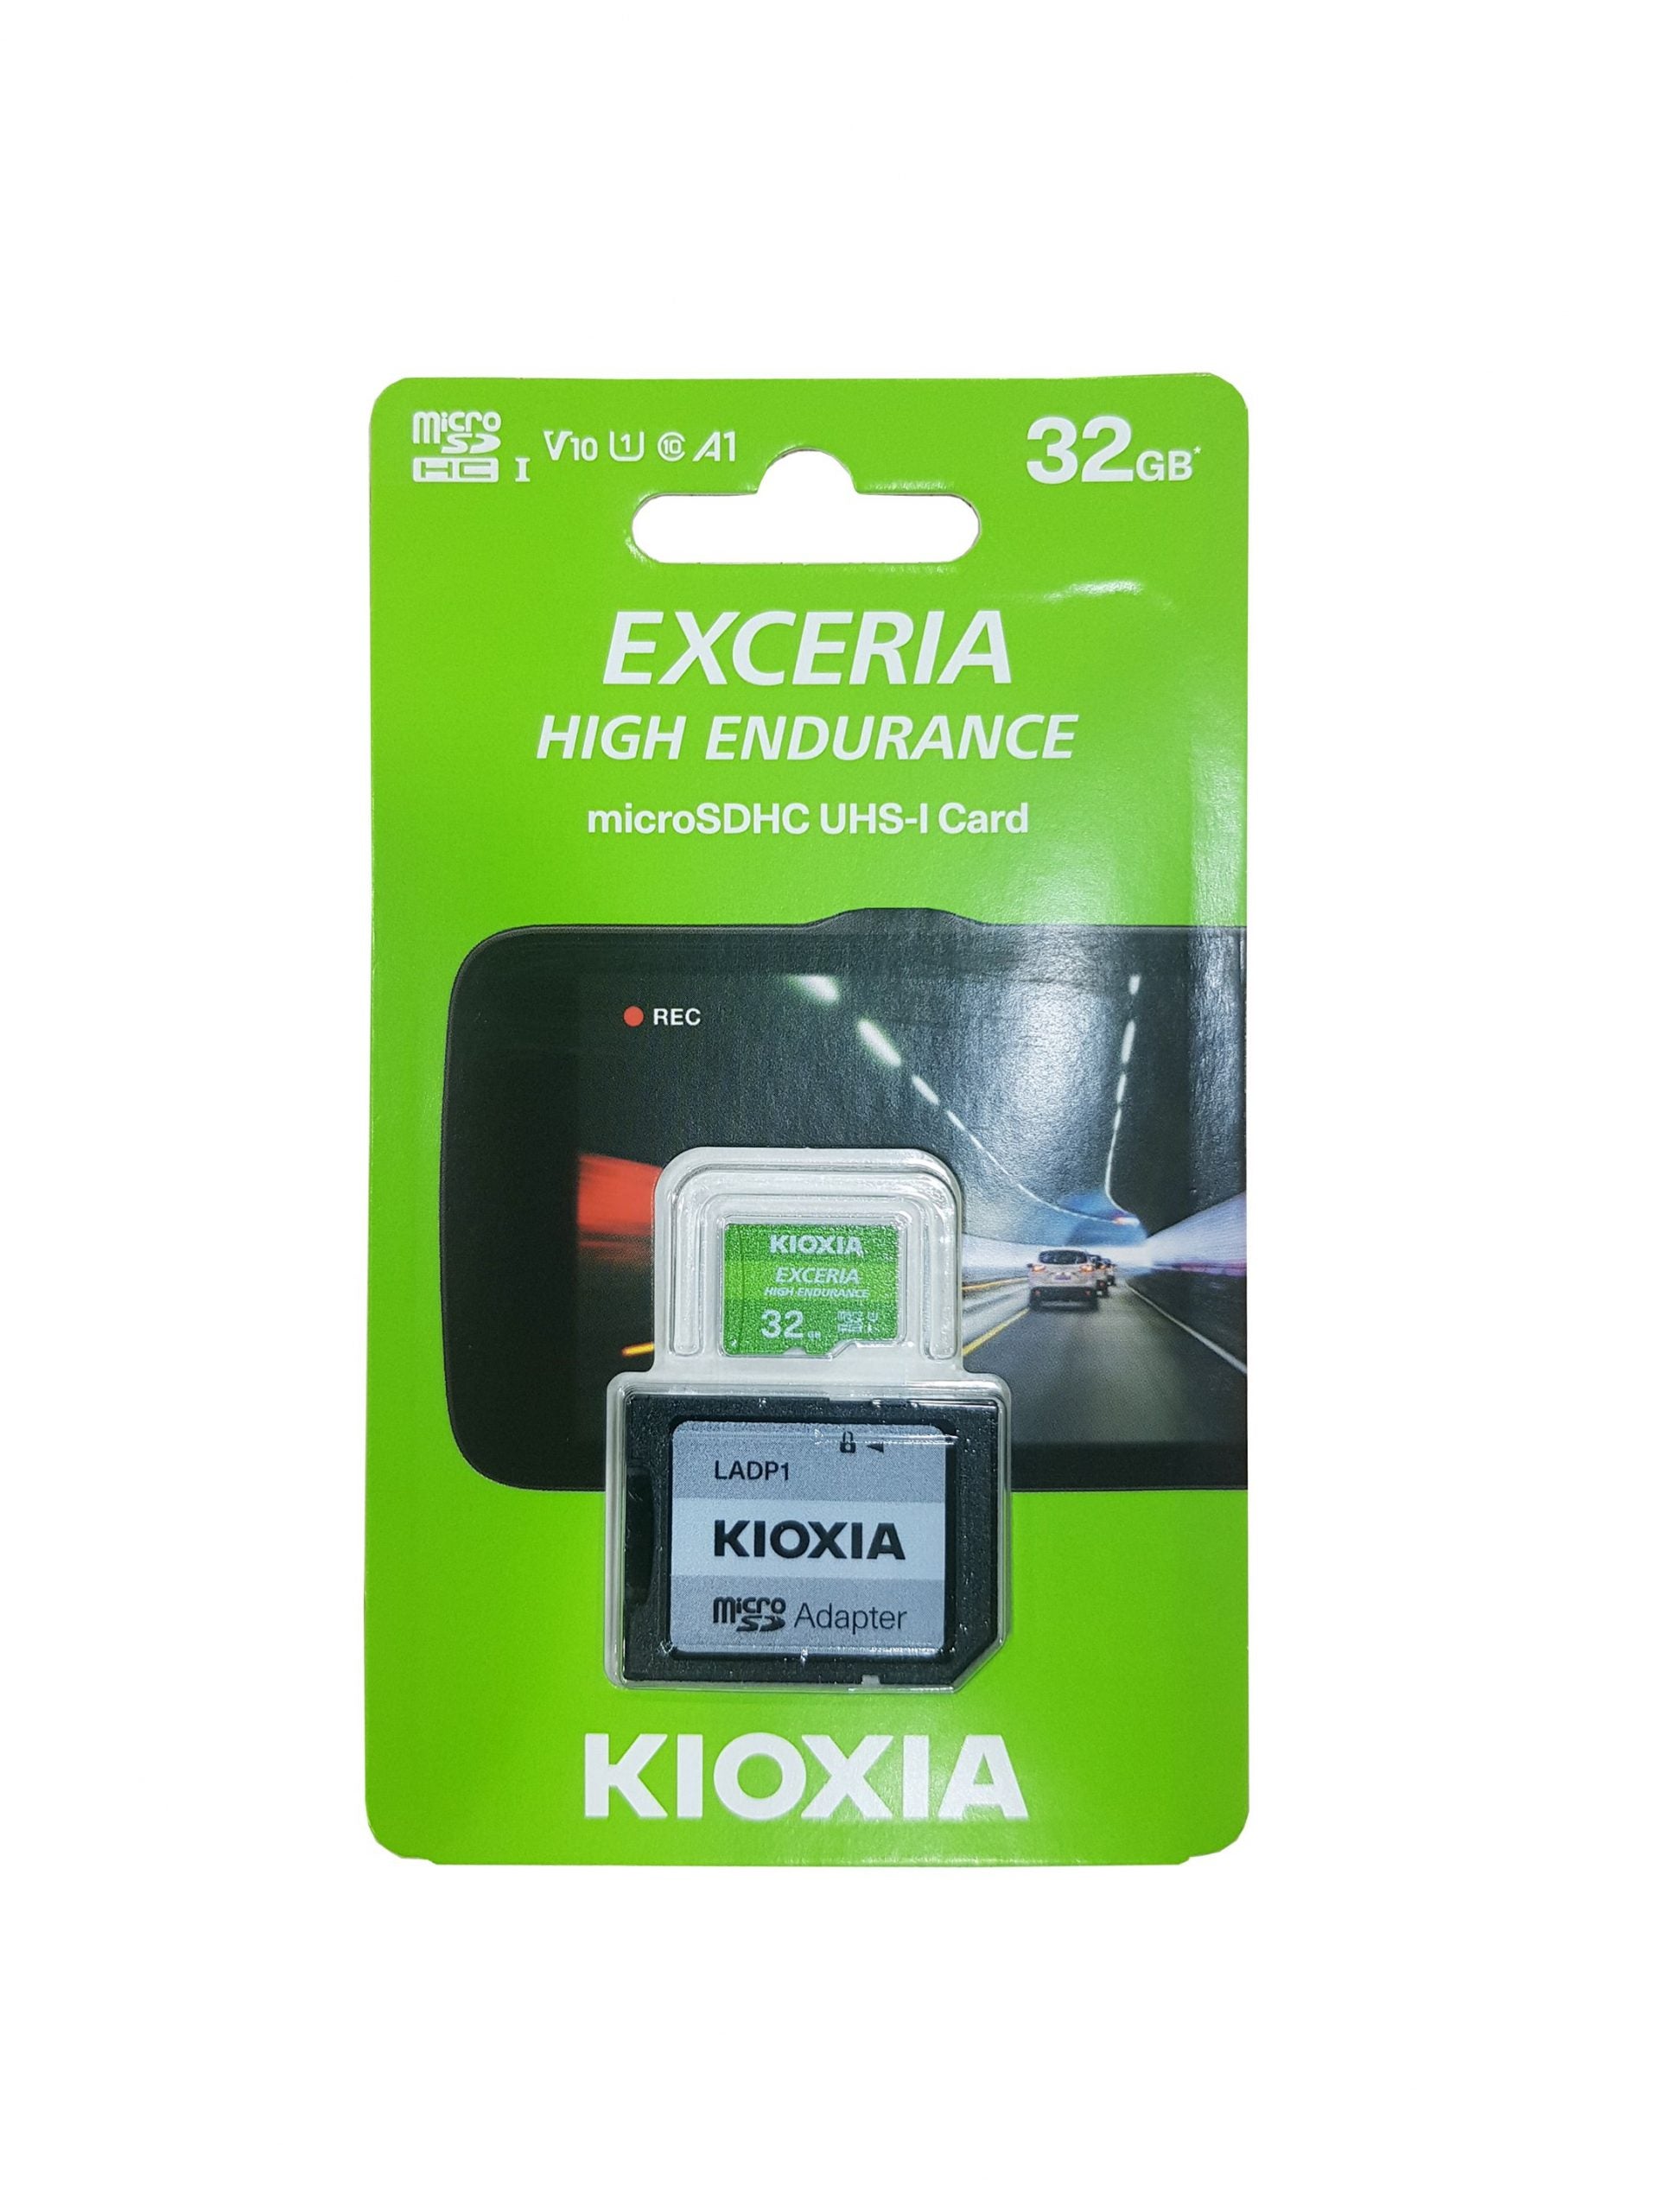 بطاقة KIOXIA Exceria عالية التحمل MicroSDHC UHS-1 بسعة 32 جيجابايت